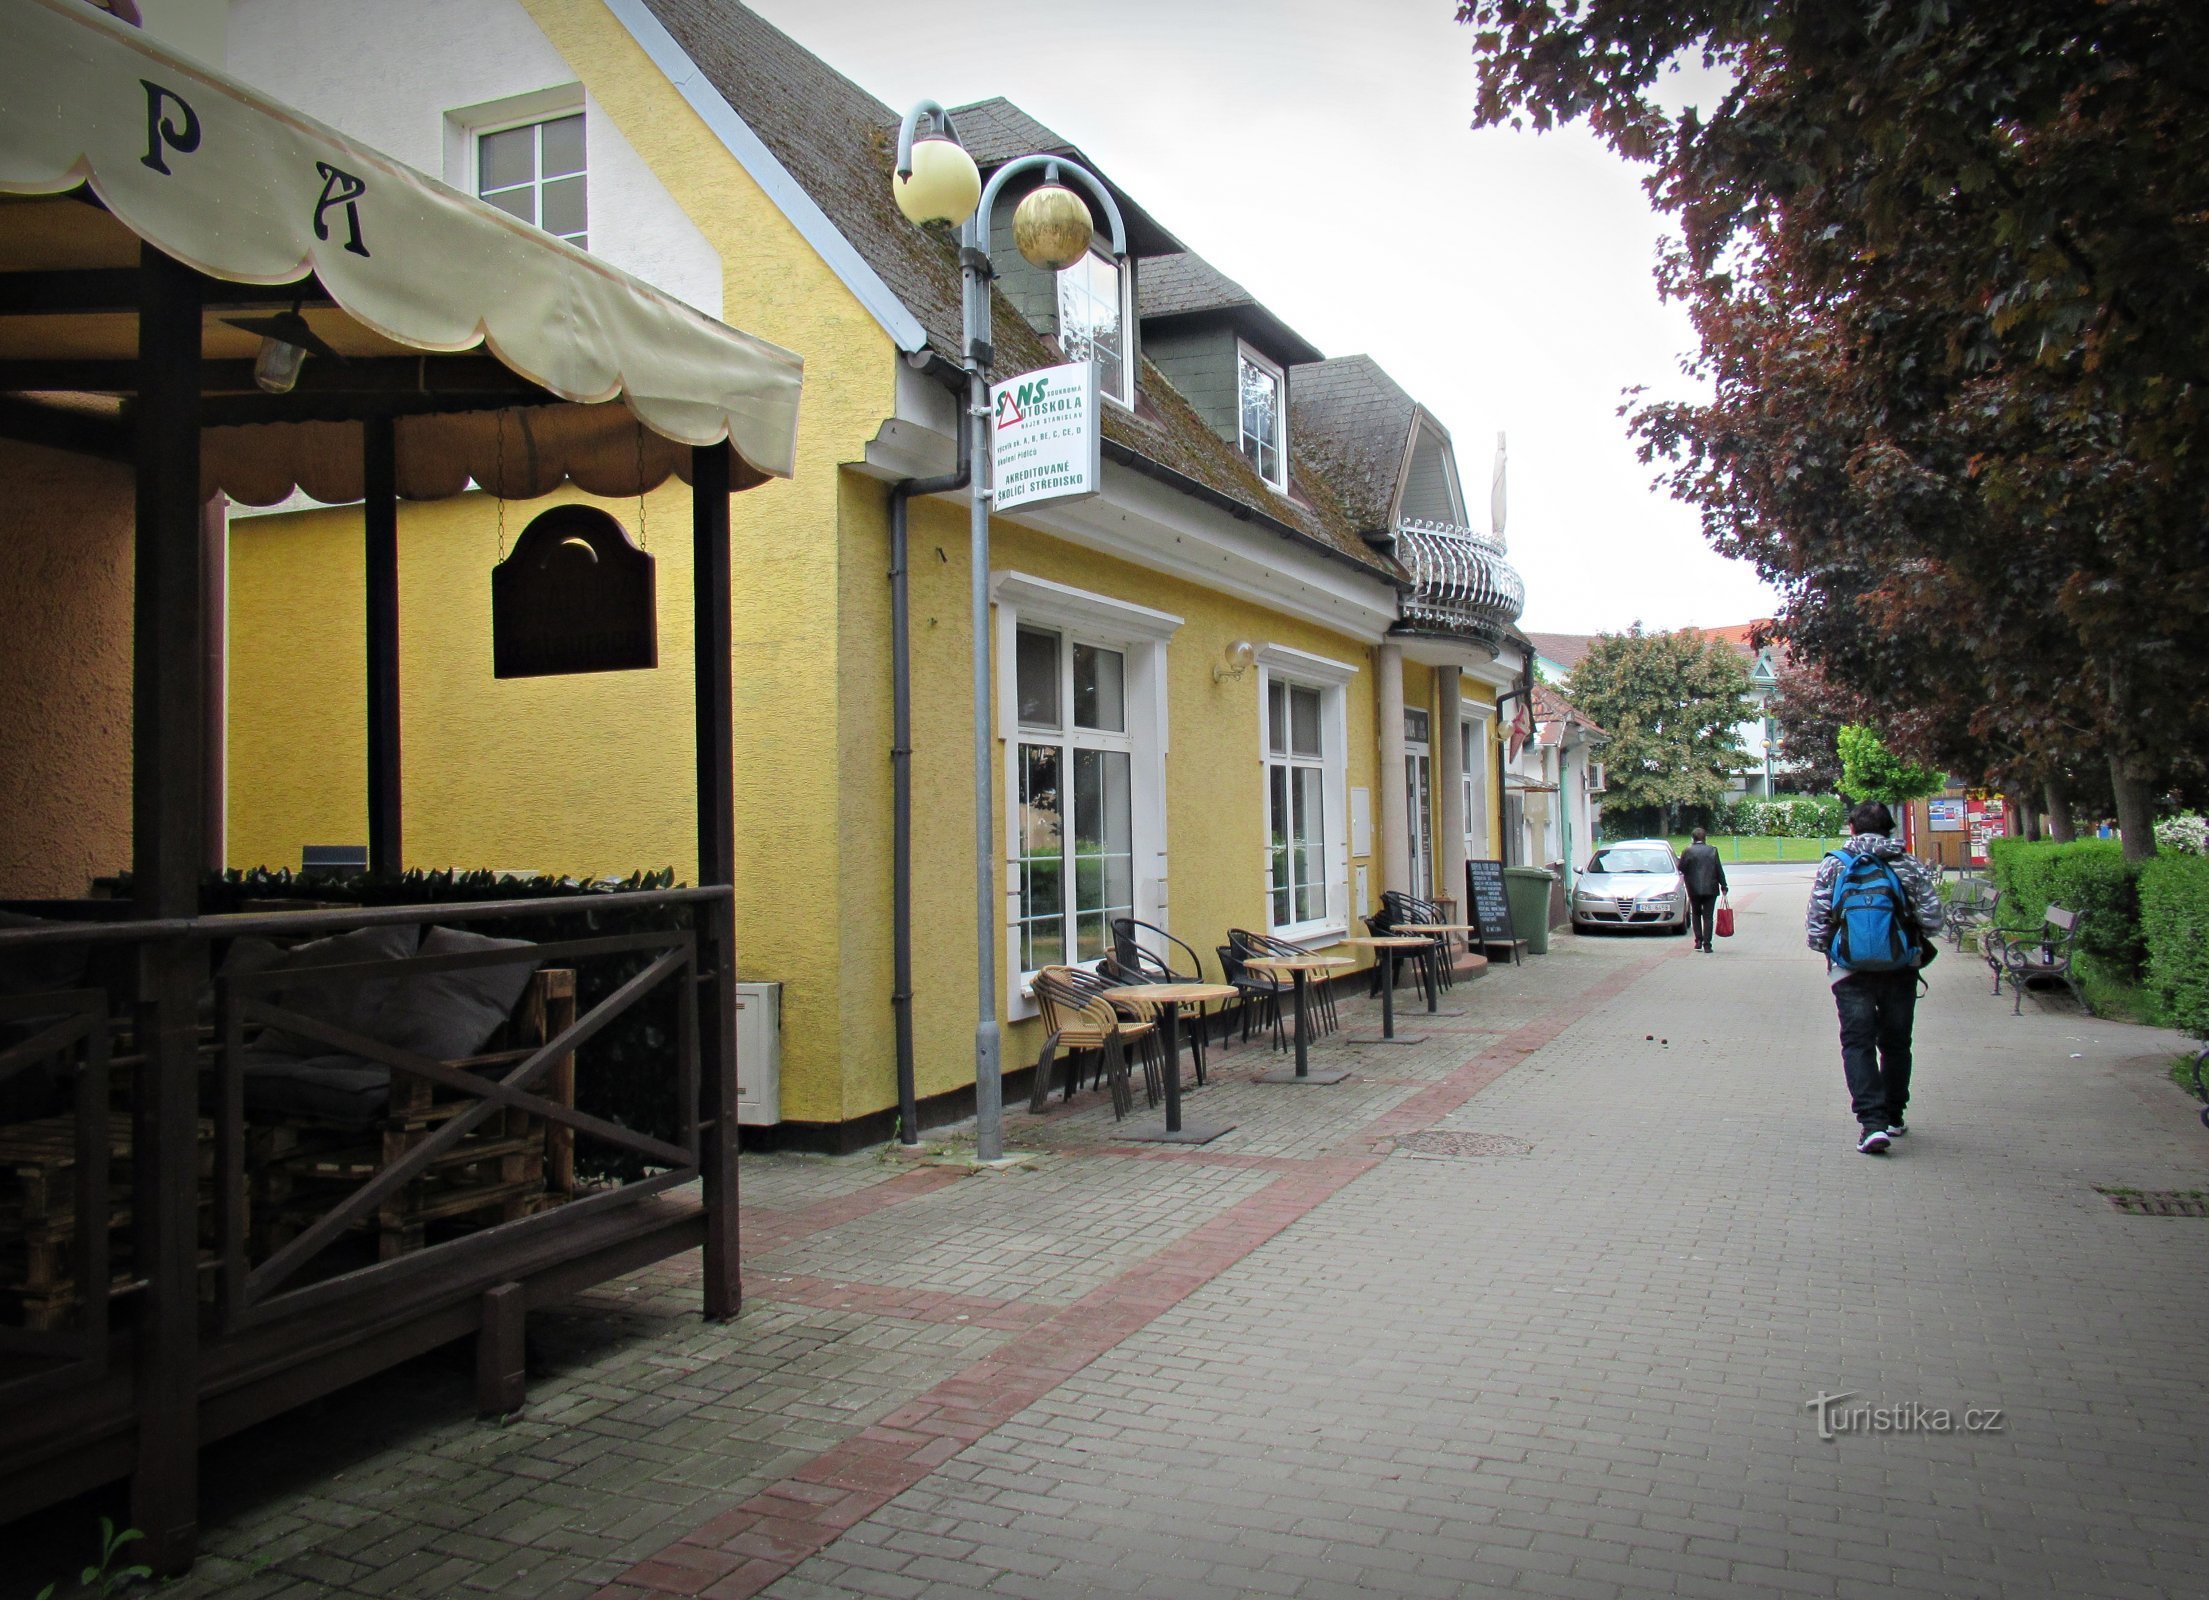 The new cafe Lucerna in Bojkovice